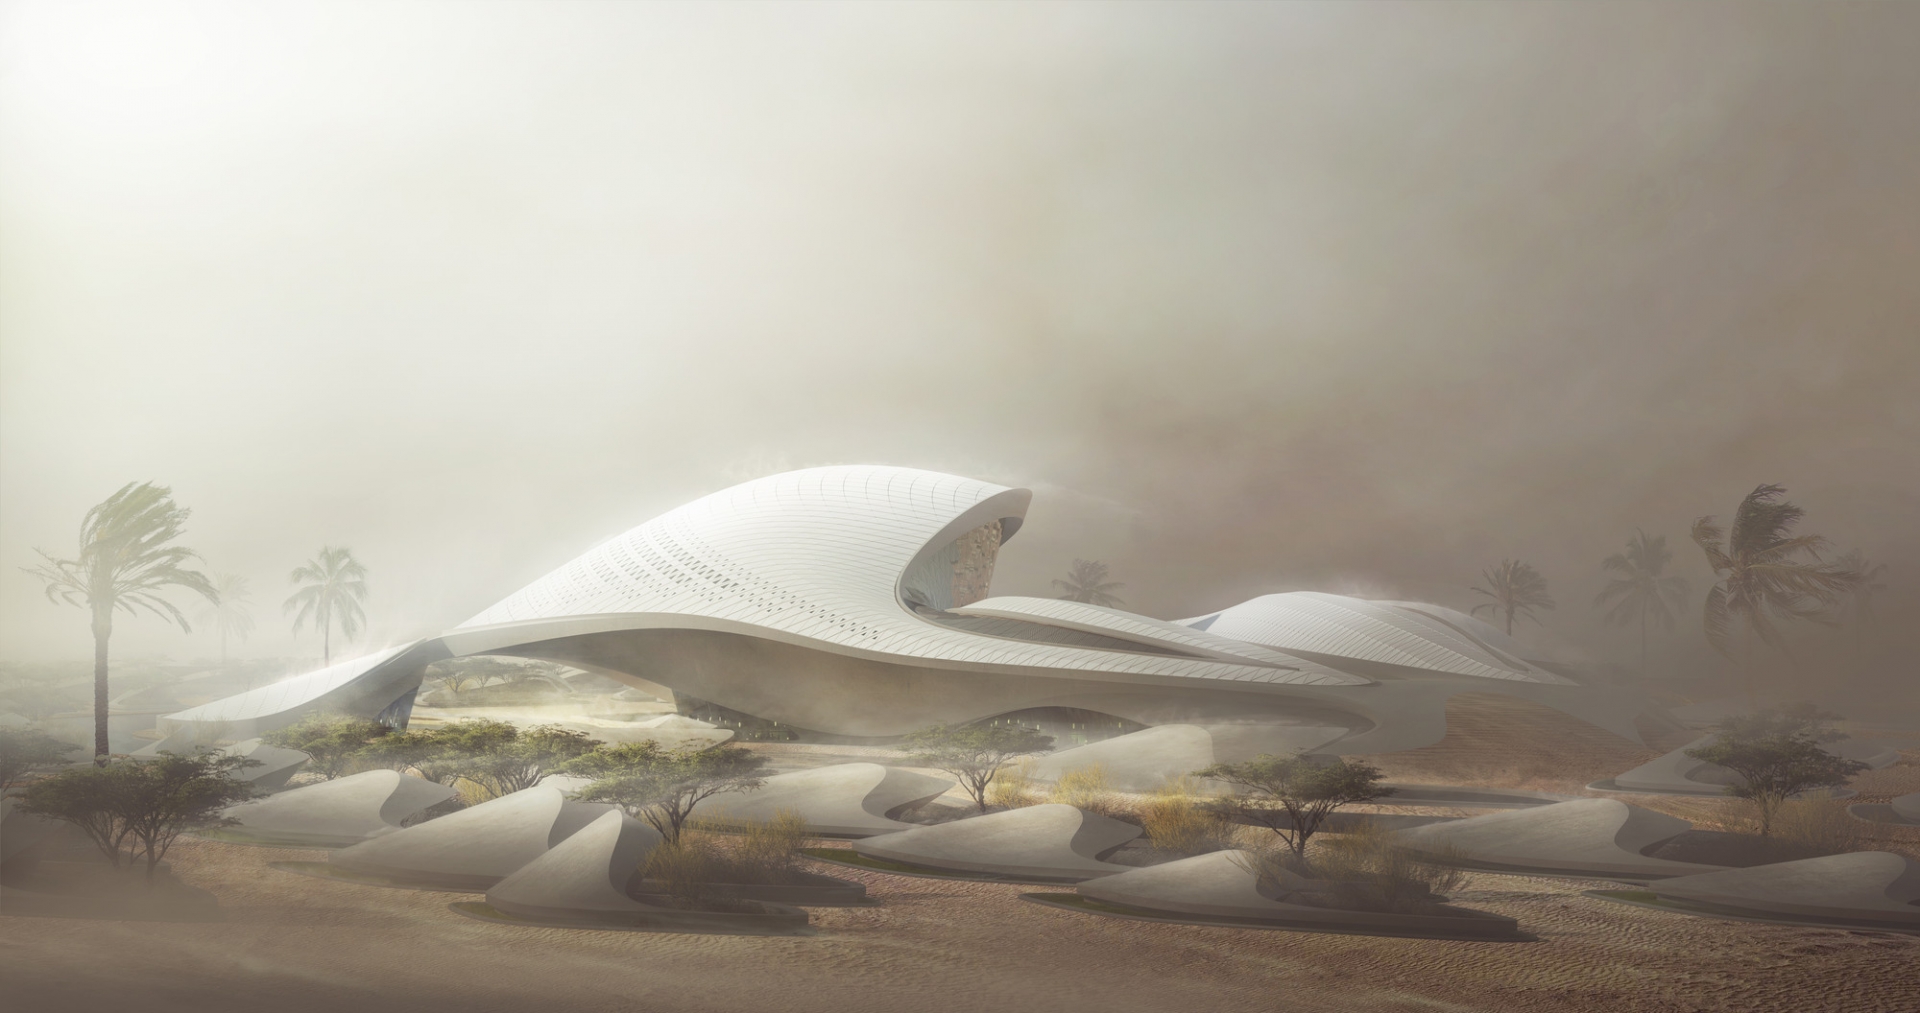 Tòa nhà tuyệt đẹp lấy cảm hứng từ cồn cát rực rỡ trong nắng sa mạc Trung Đông - Ảnh 3